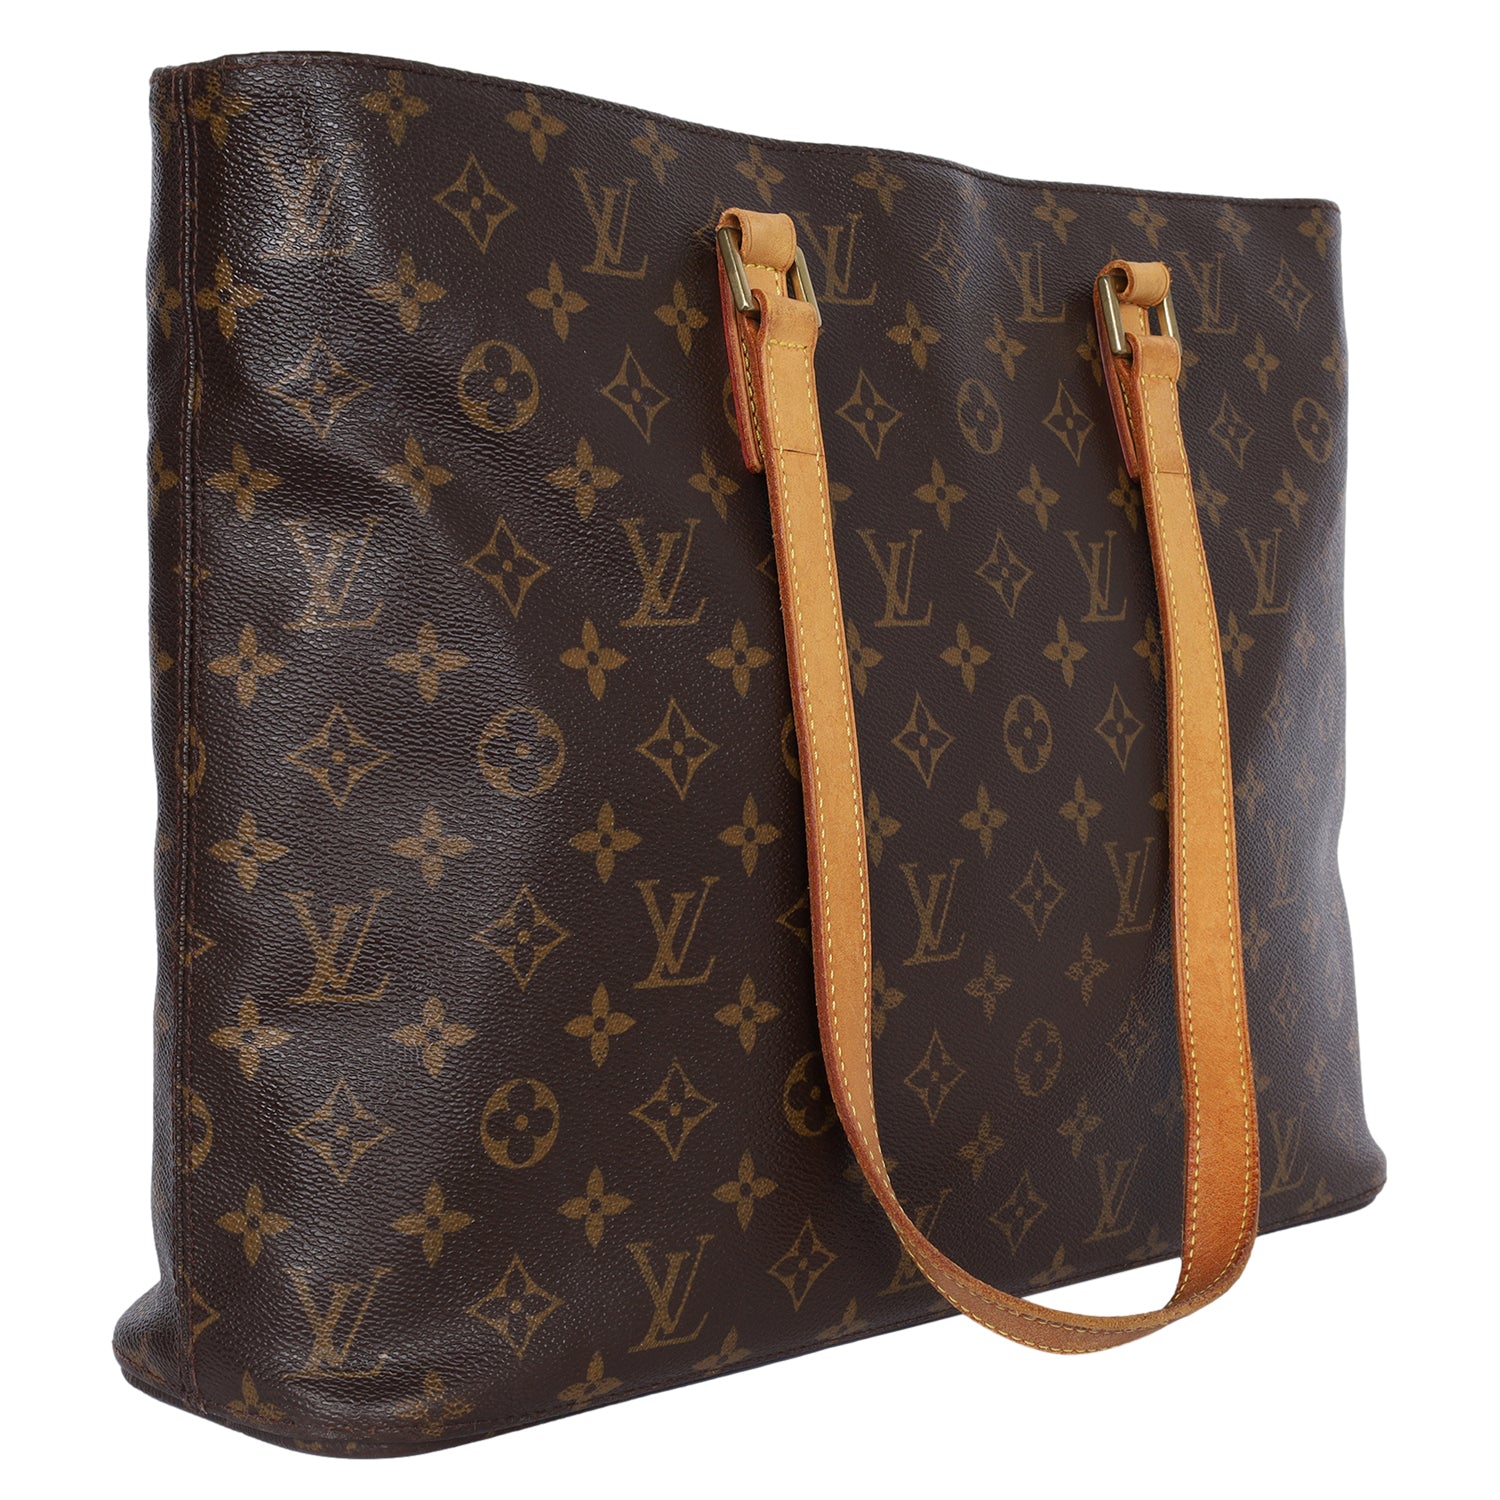 Authentic Louis Vuitton Classic Monogram Luco Tote Bag